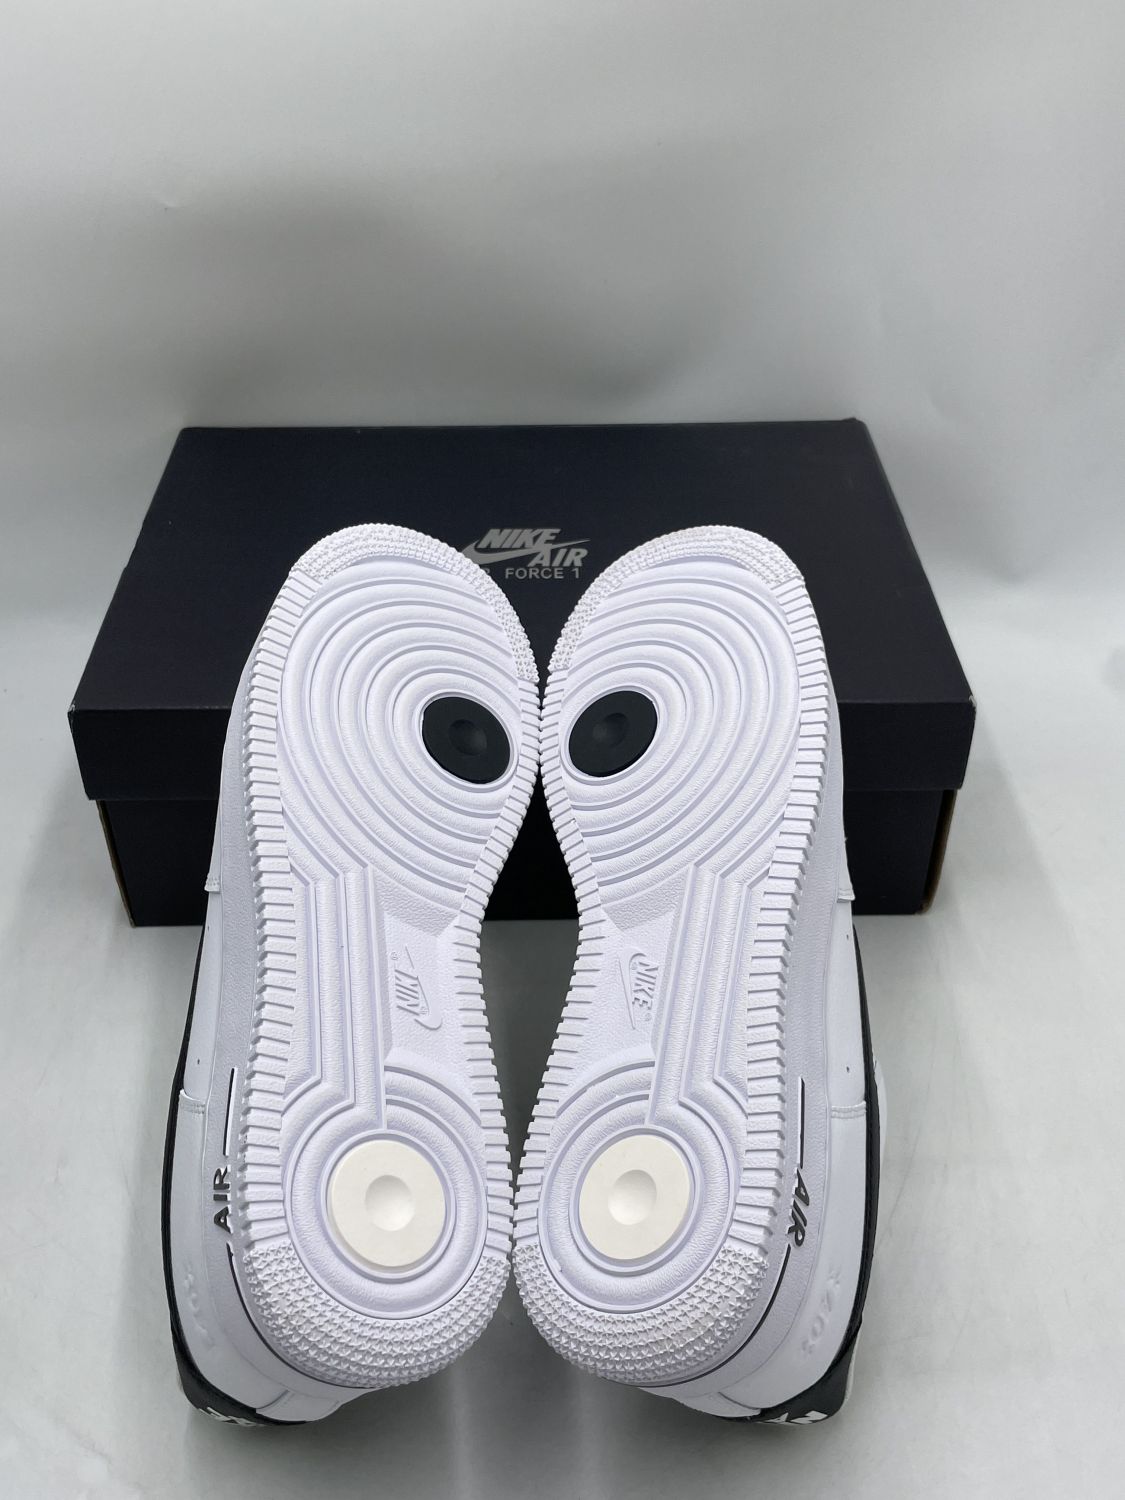 Nike Air Force 1 Low '07 LV8 40th Anniversary White Black – shoegamemanila